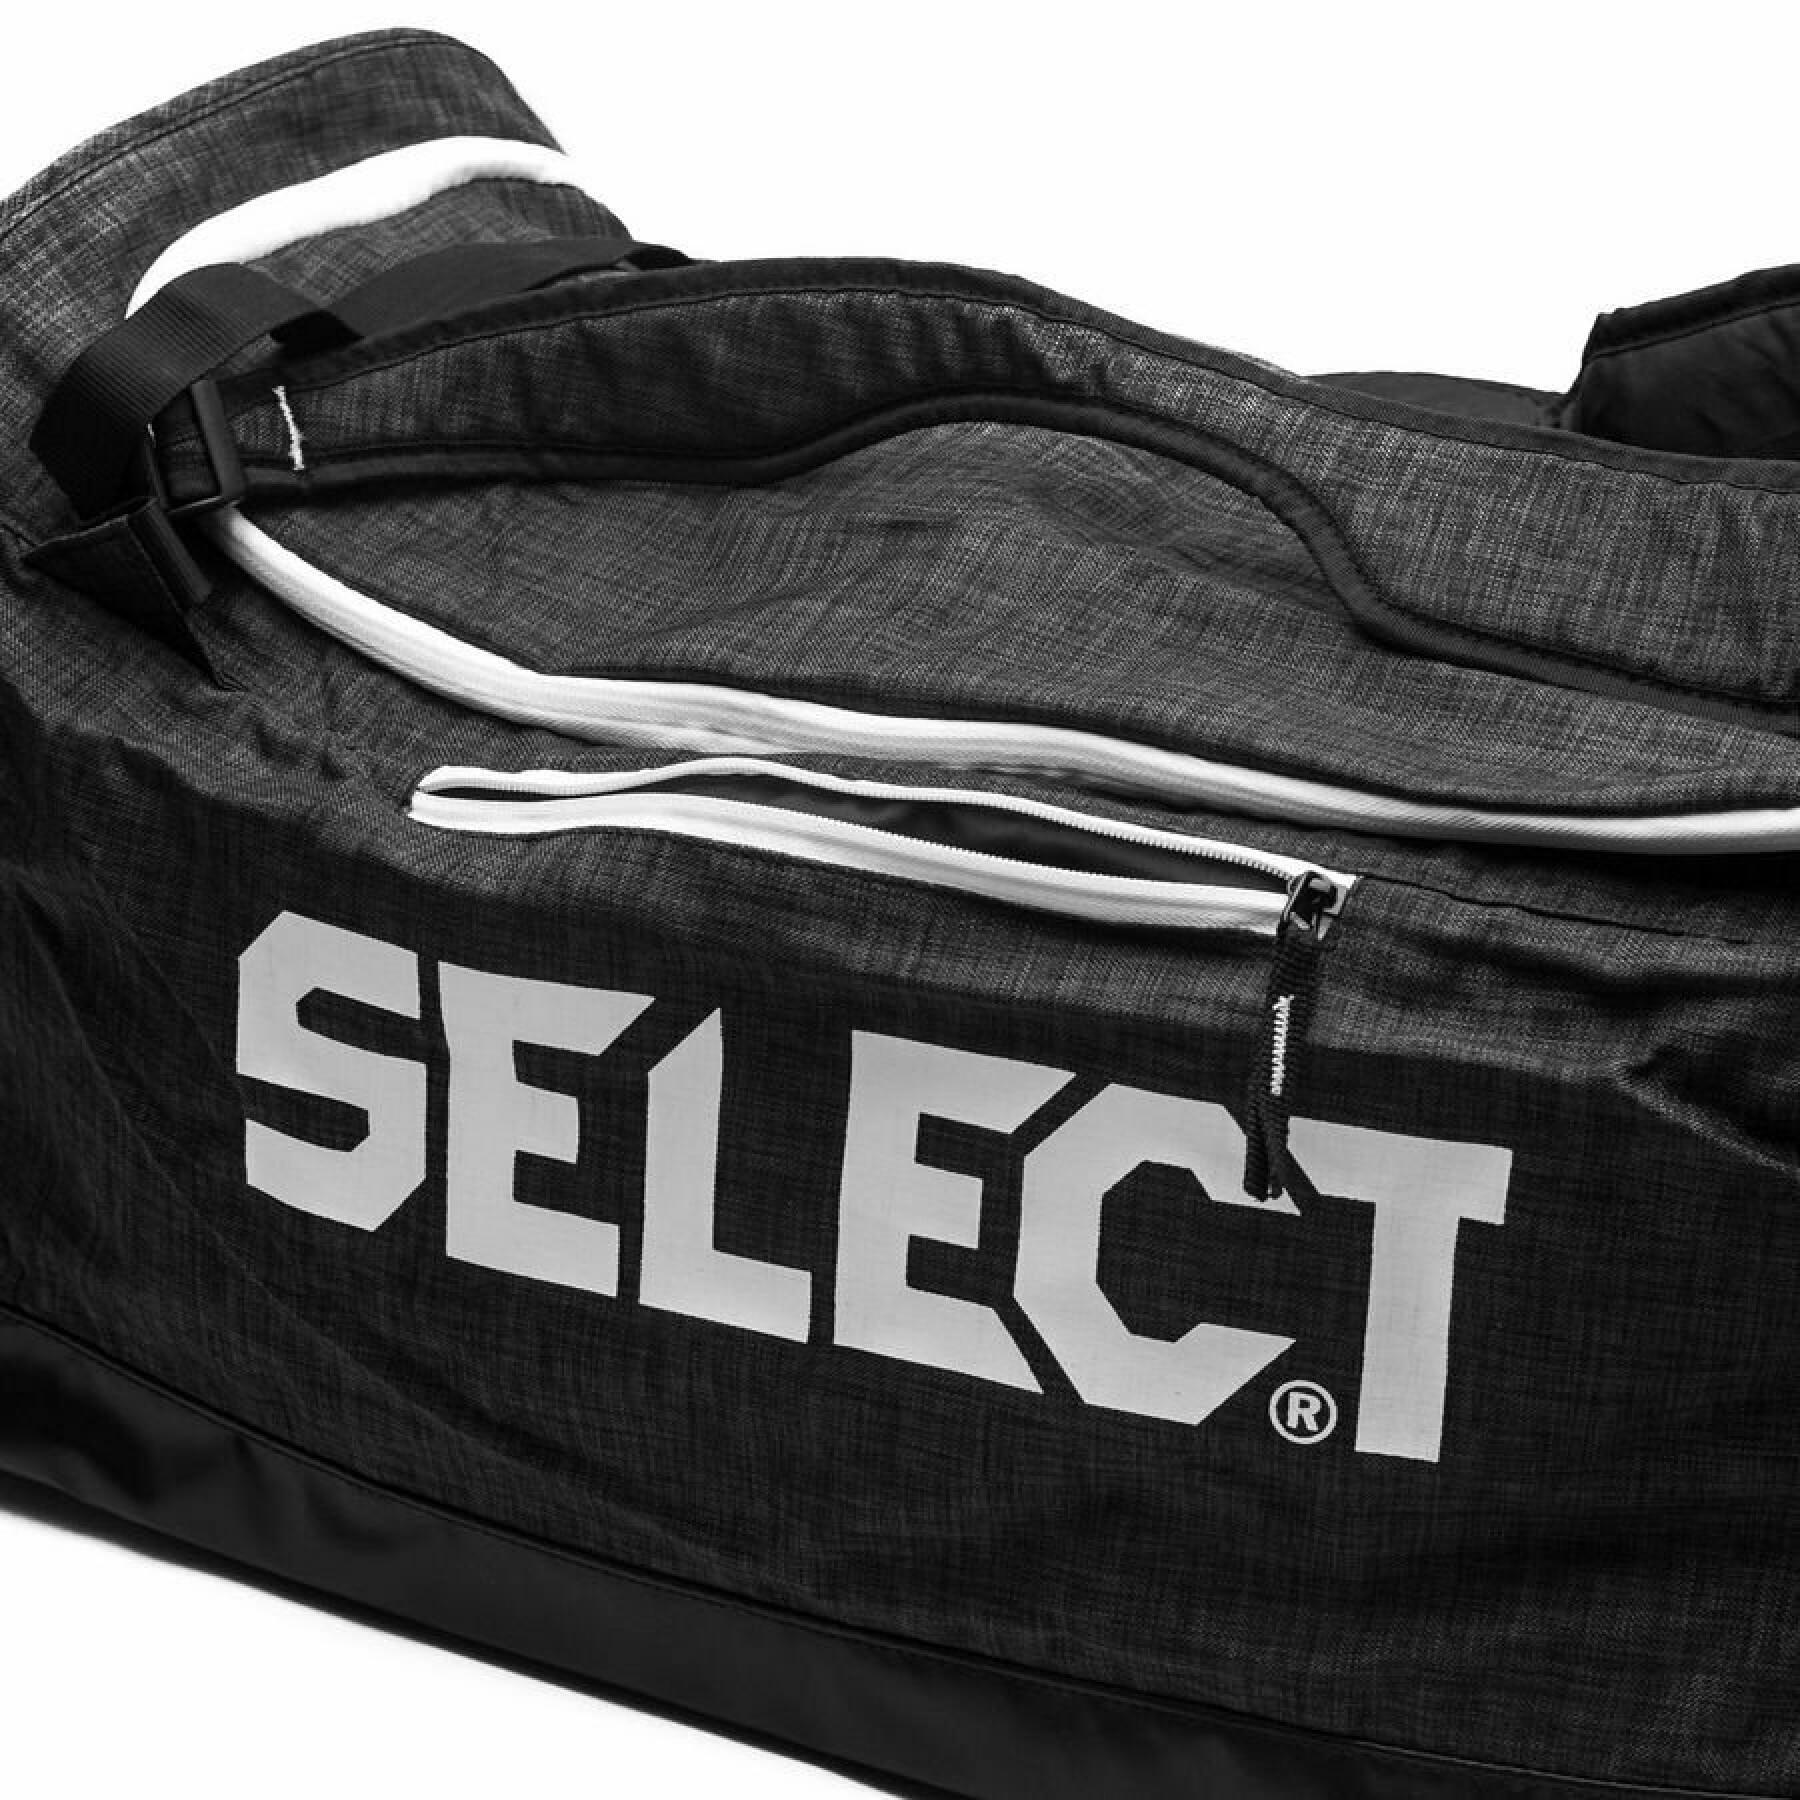 Sports bag Select Lazio M